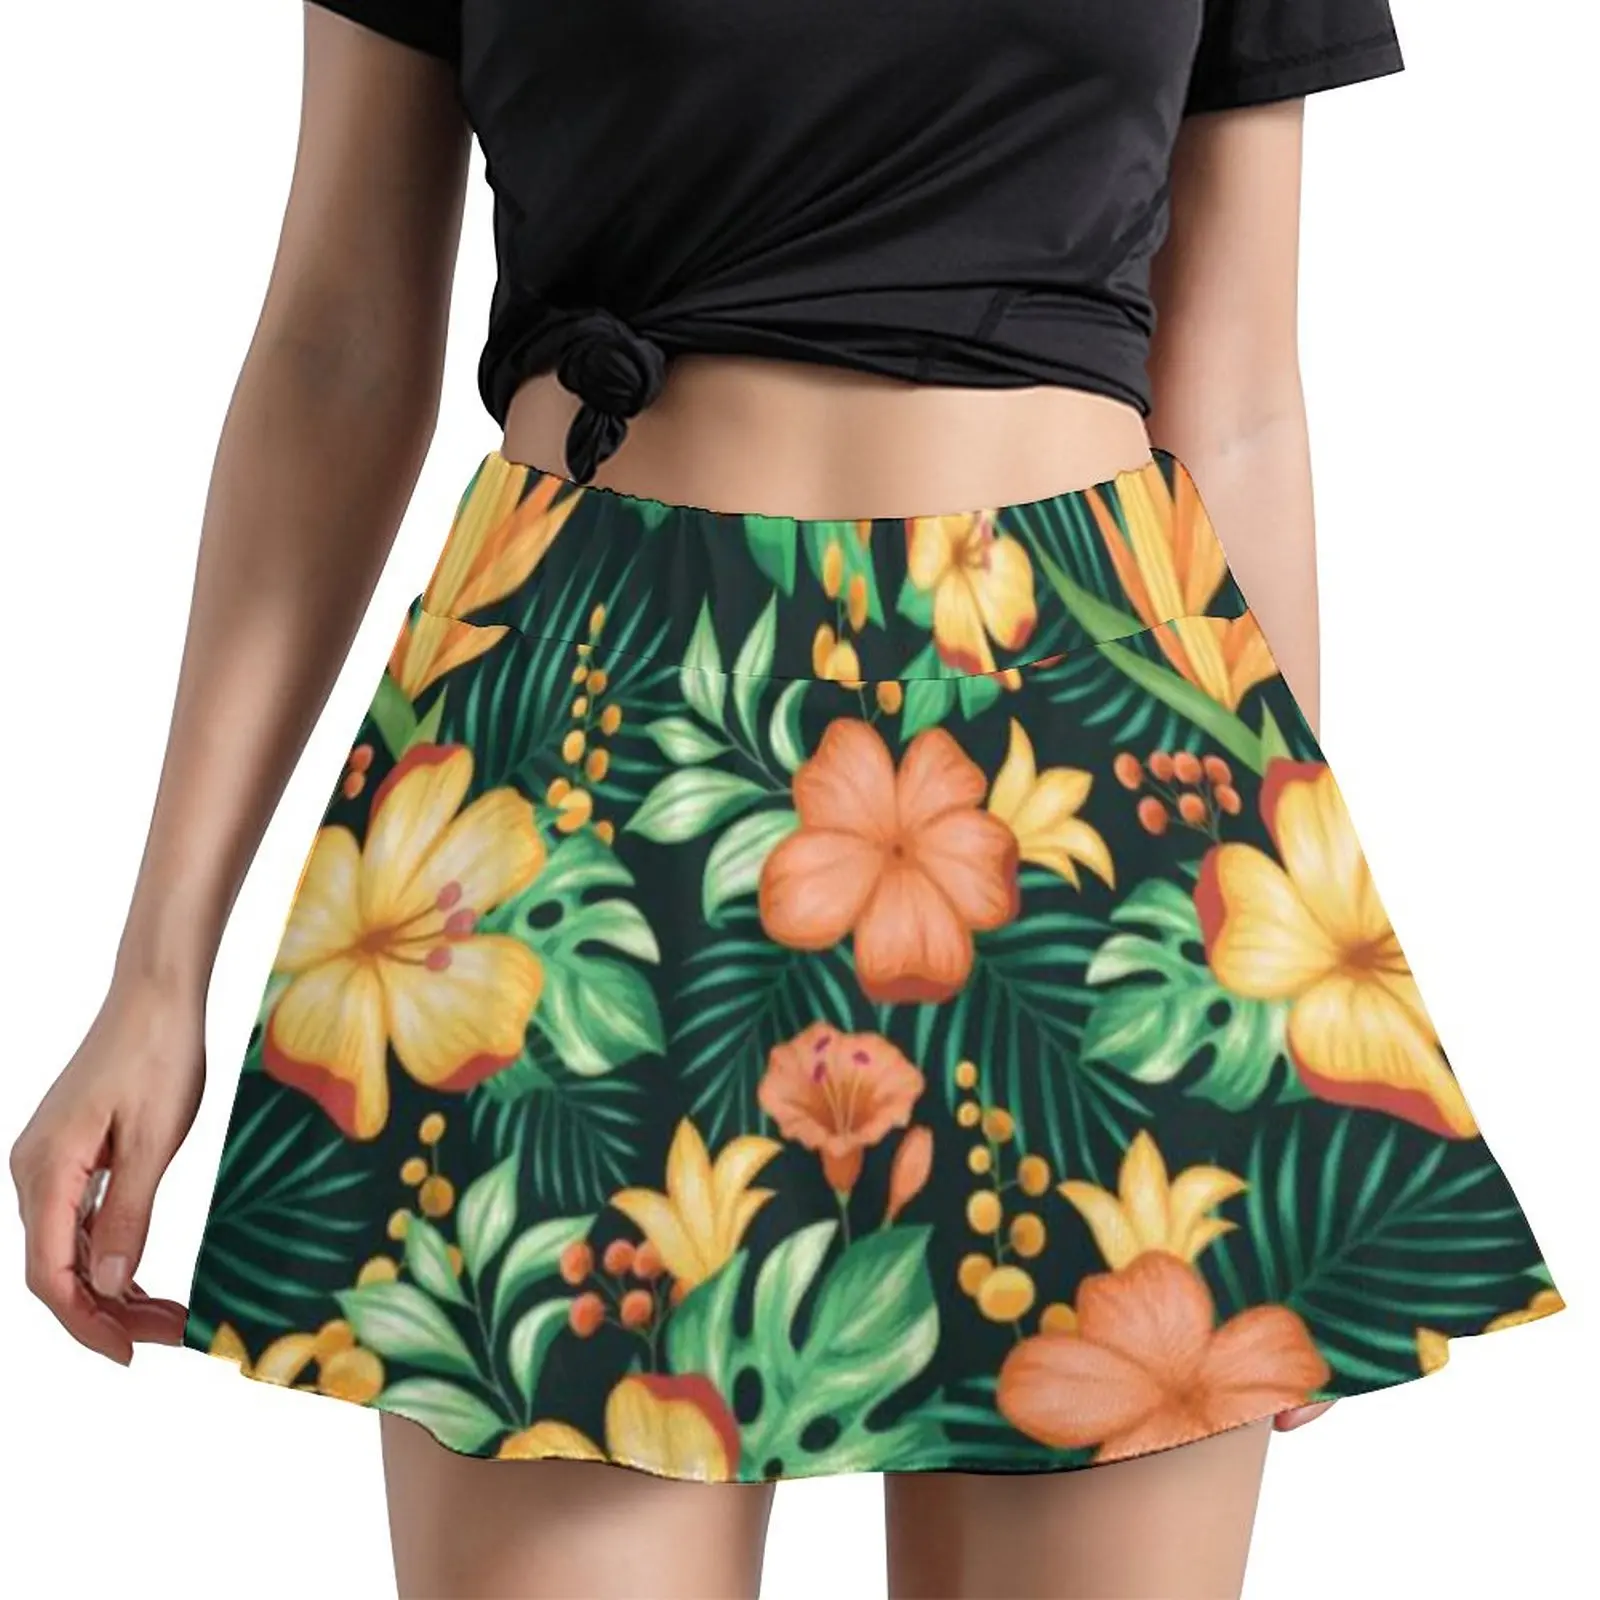 

Юбка-трапеция с цветочным принтом, повседневная элегантная мини-юбка в уличном стиле, с тропическим, оранжевым, зеленым цветочным принтом, б...